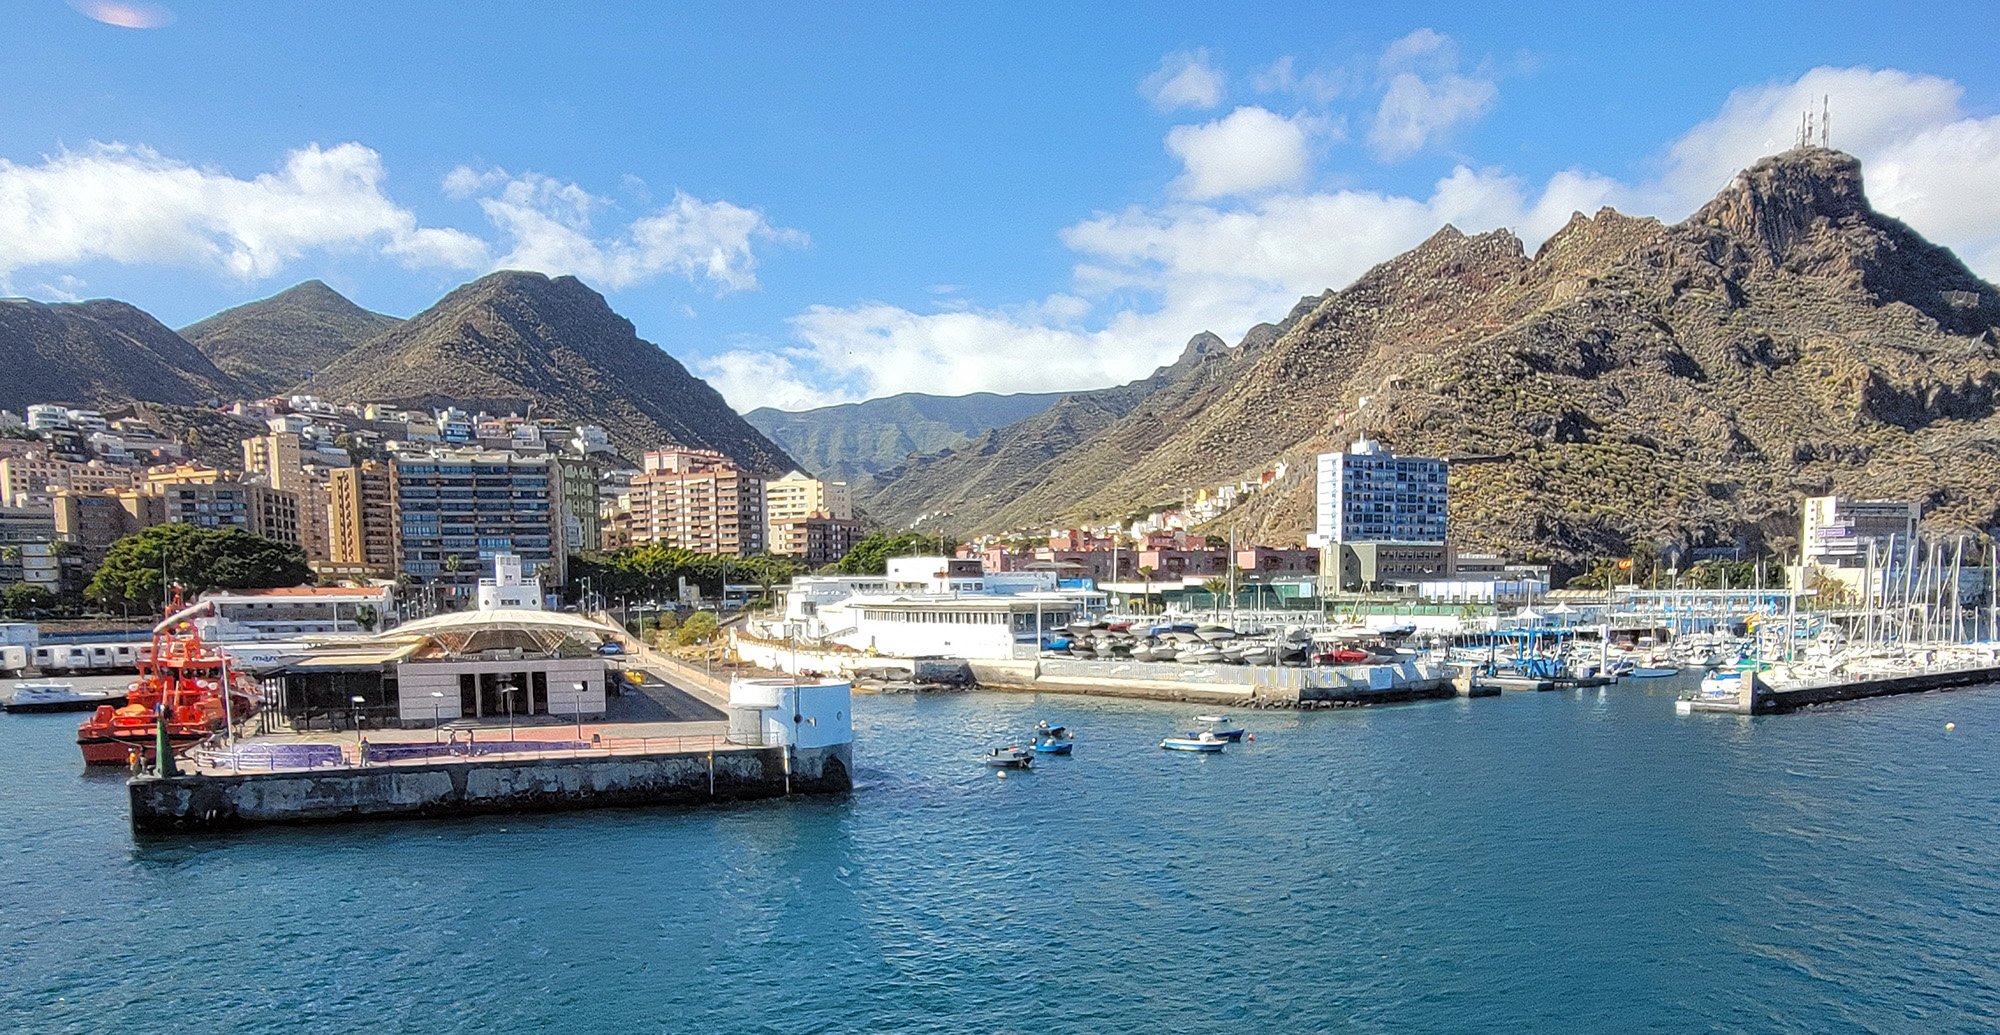 Leaving Santa Cruz de Tenerife behind.